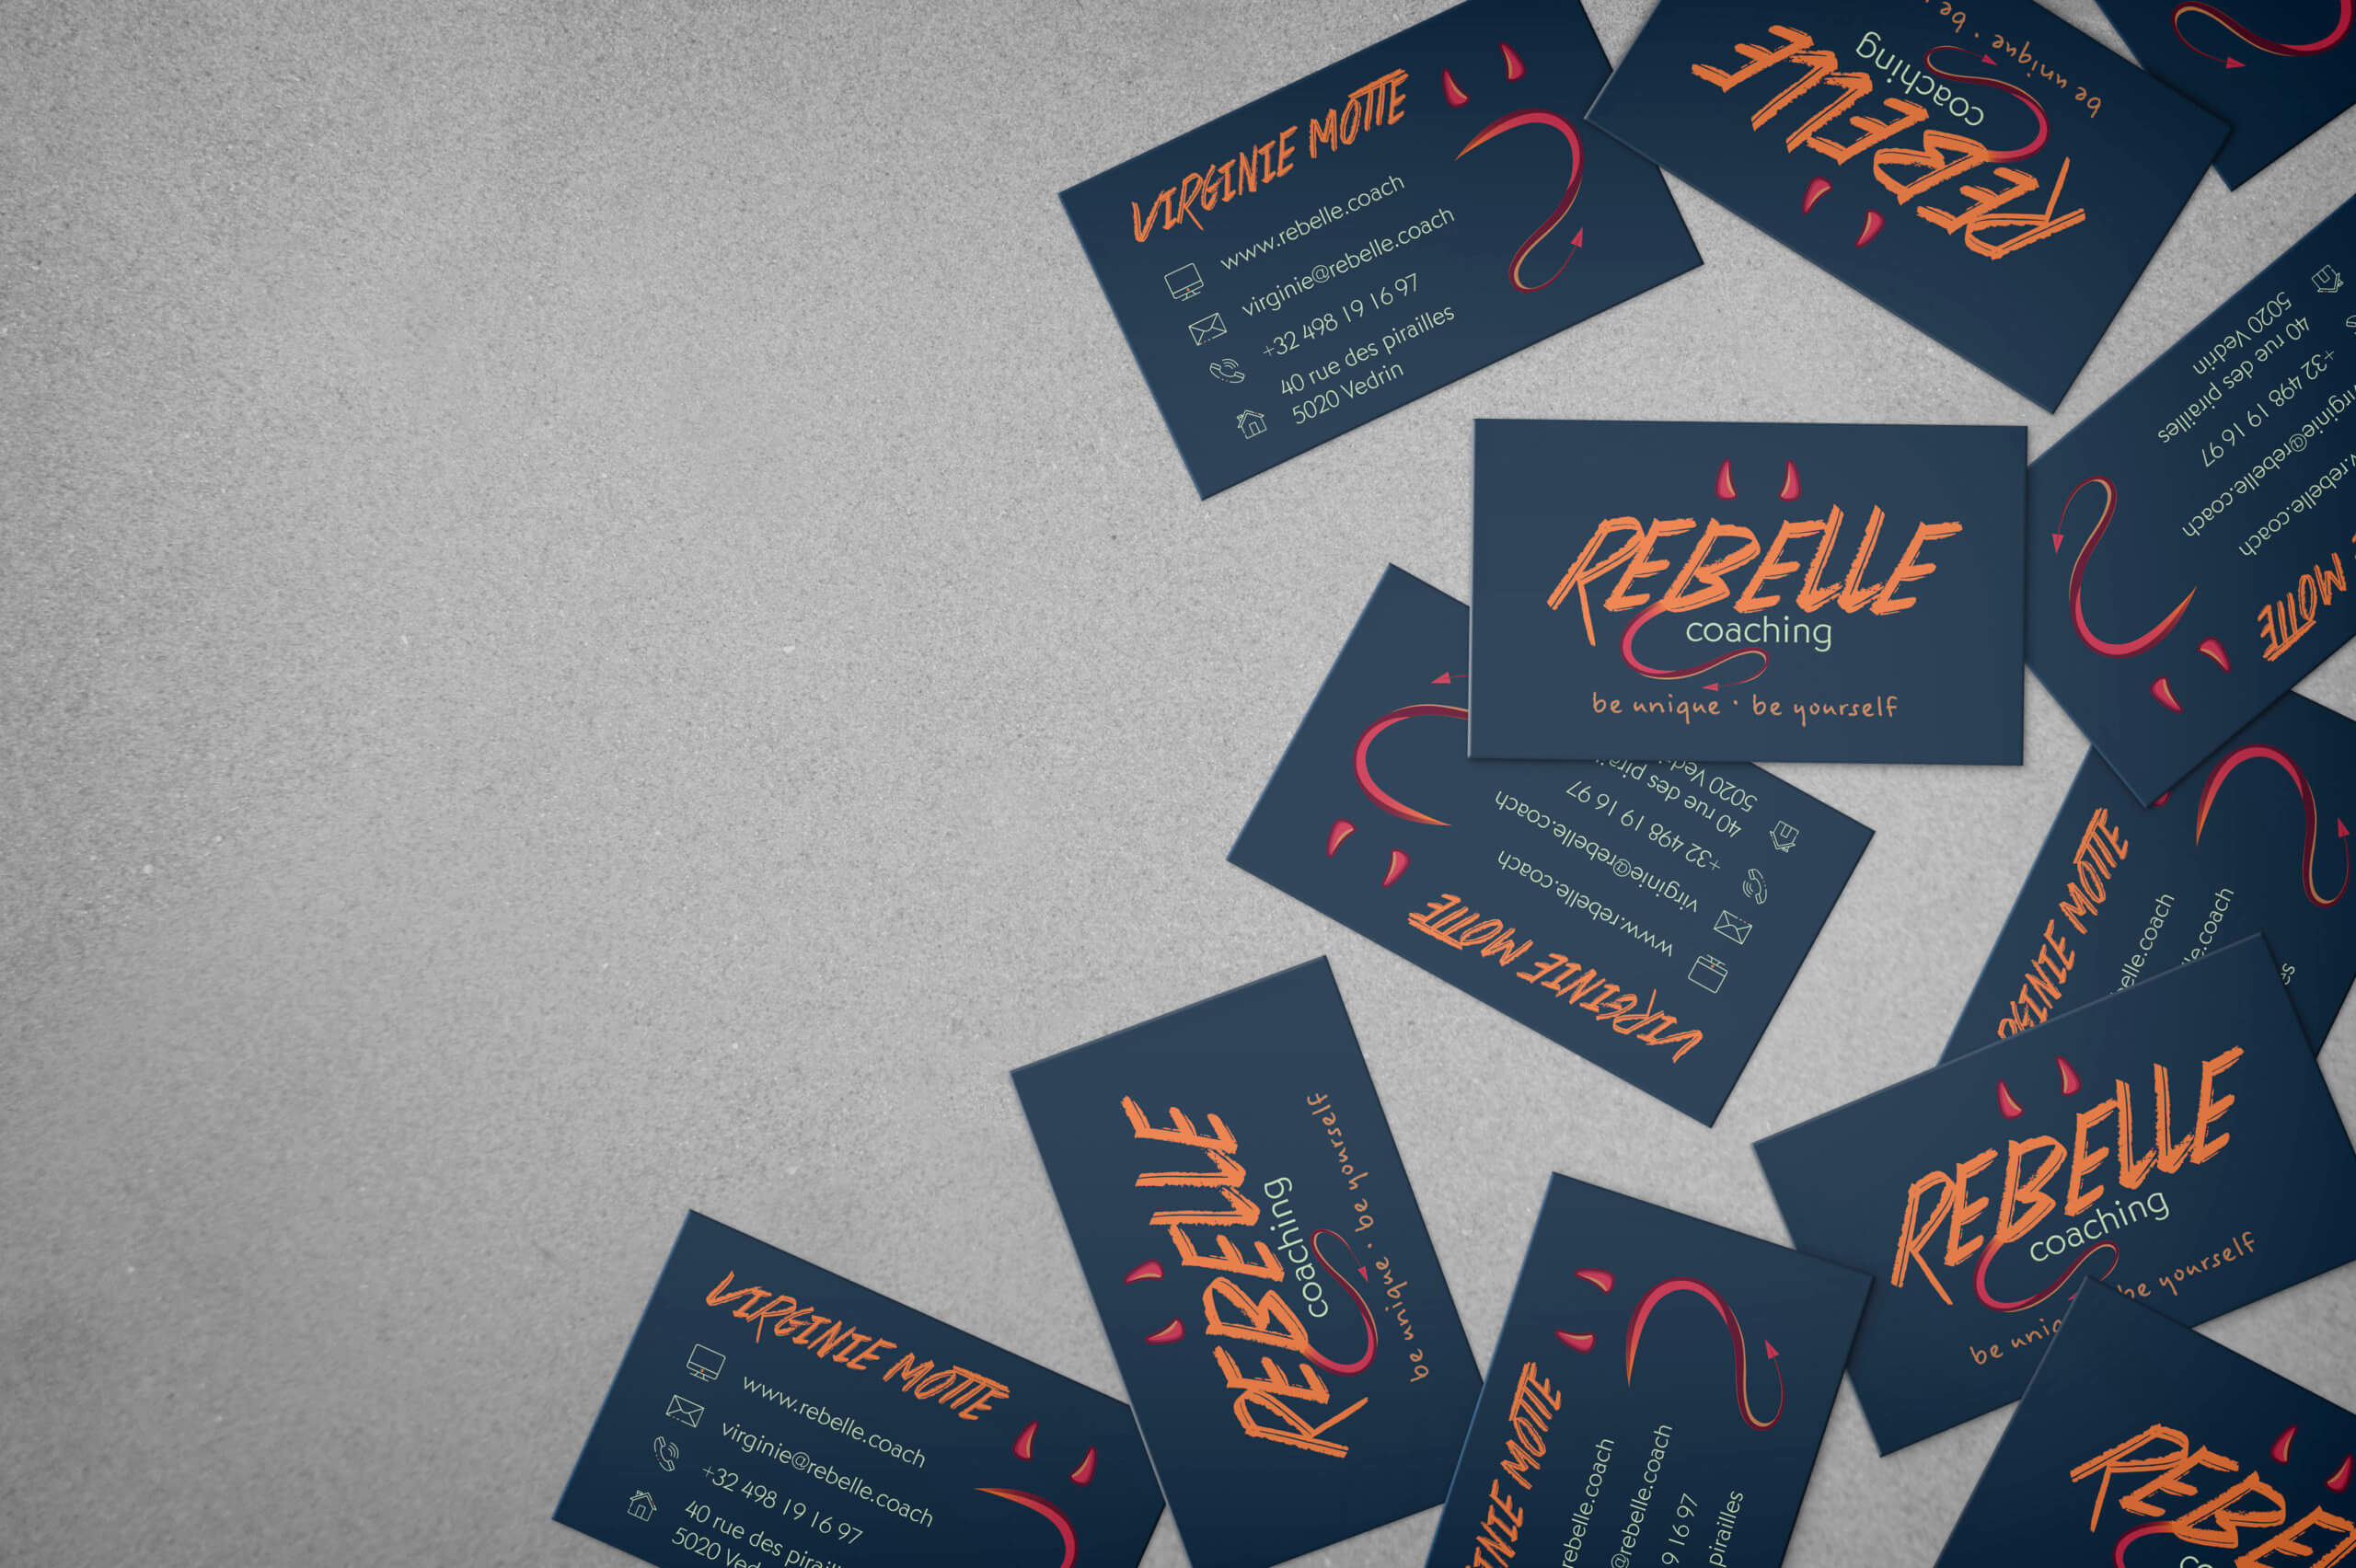 Création d'identité visuelle pour Rebelle Coaching par Let You Shine créatrice web